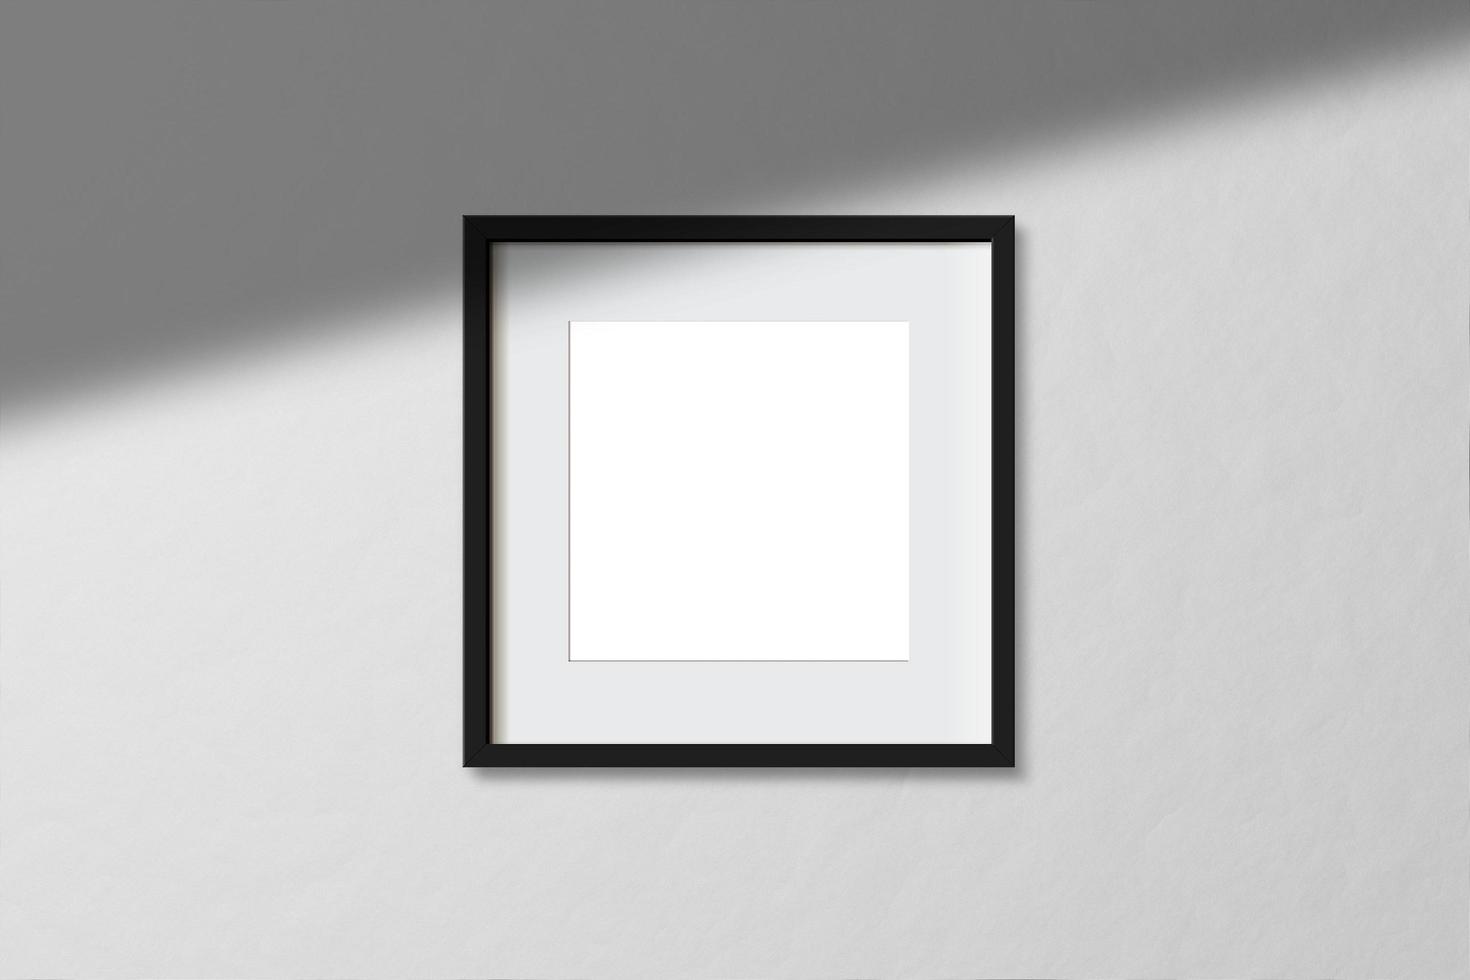 maquette de cadre noir carré vide minimal photo